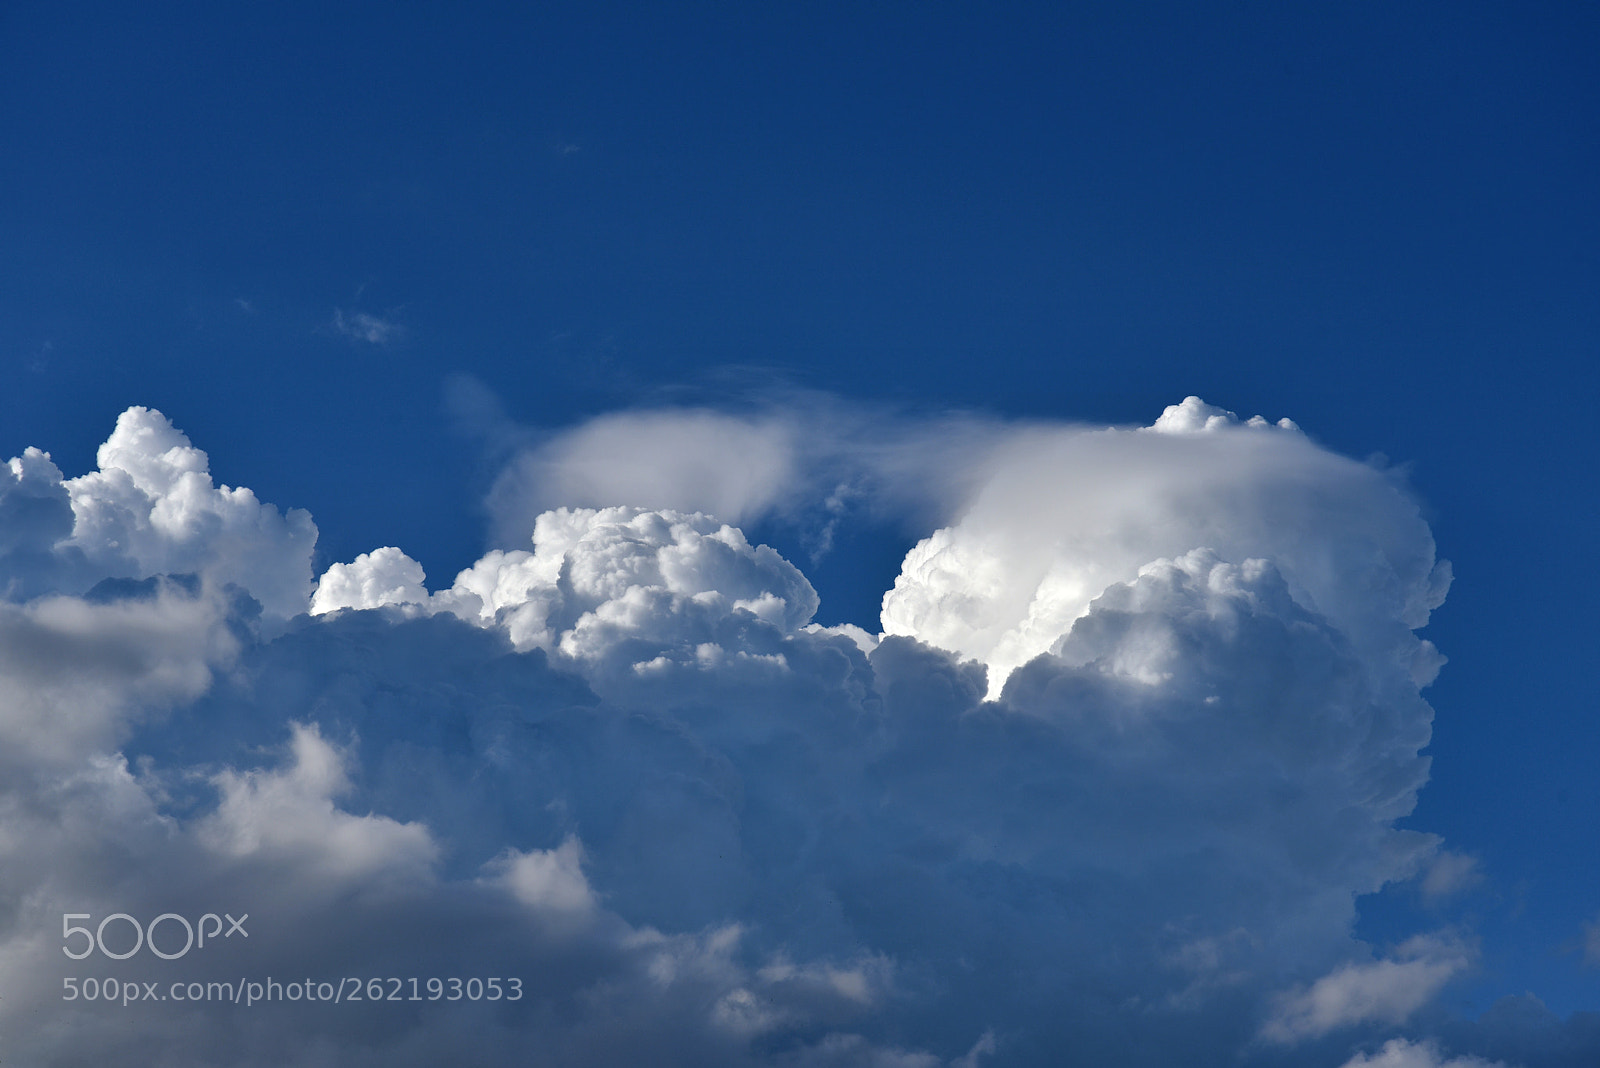 Nikon D750 sample photo. Big clouds photography